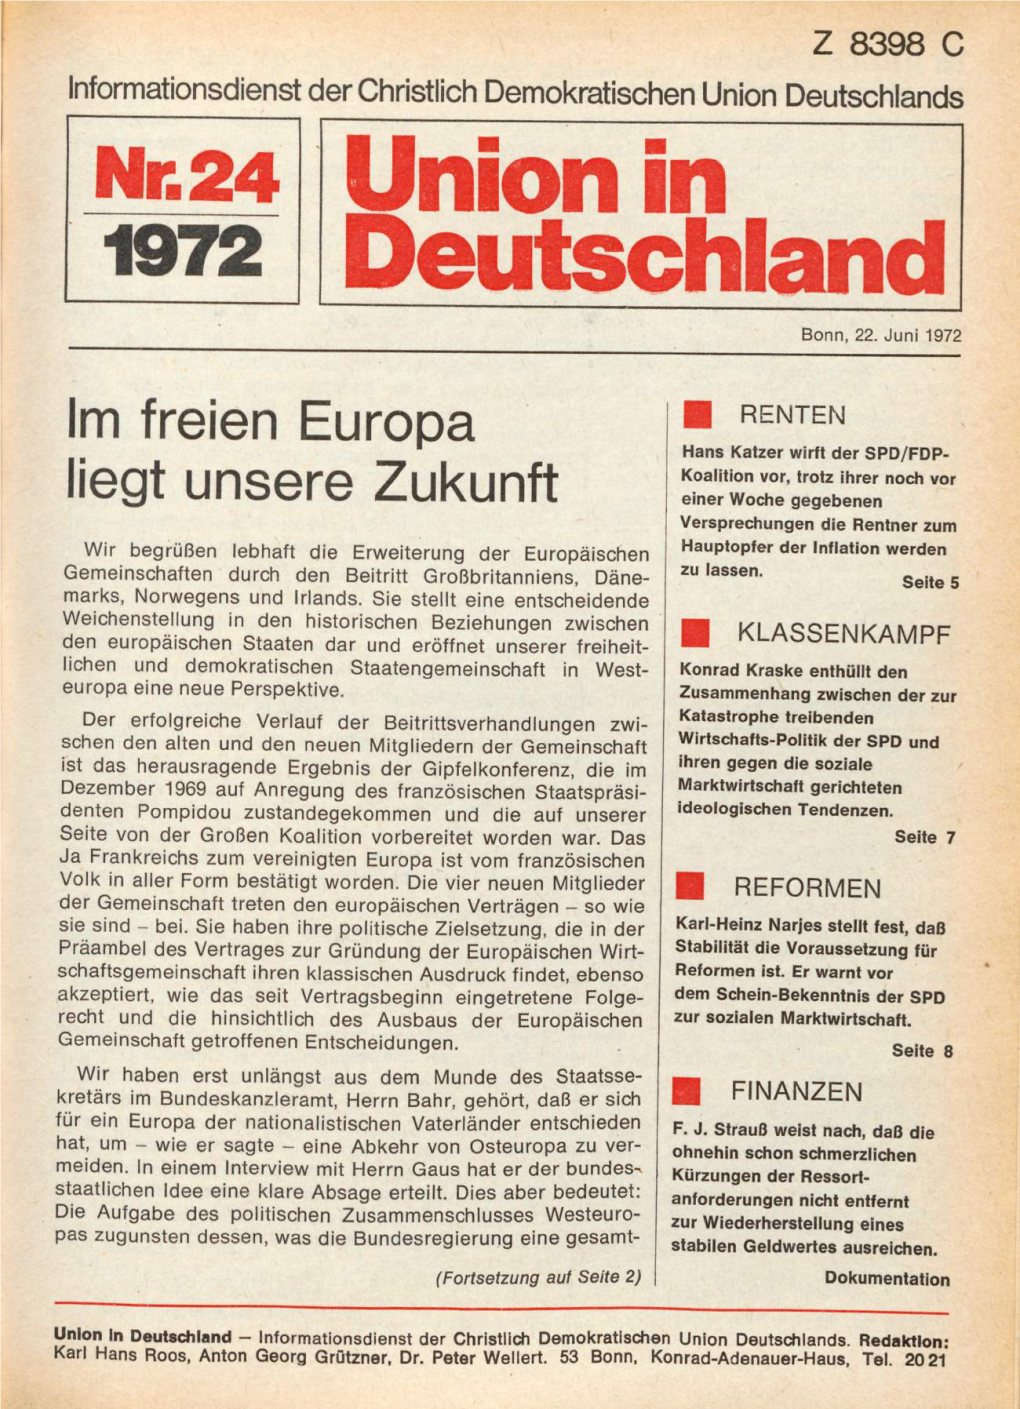 UID 1972 Nr. 24, Union in Deutschland